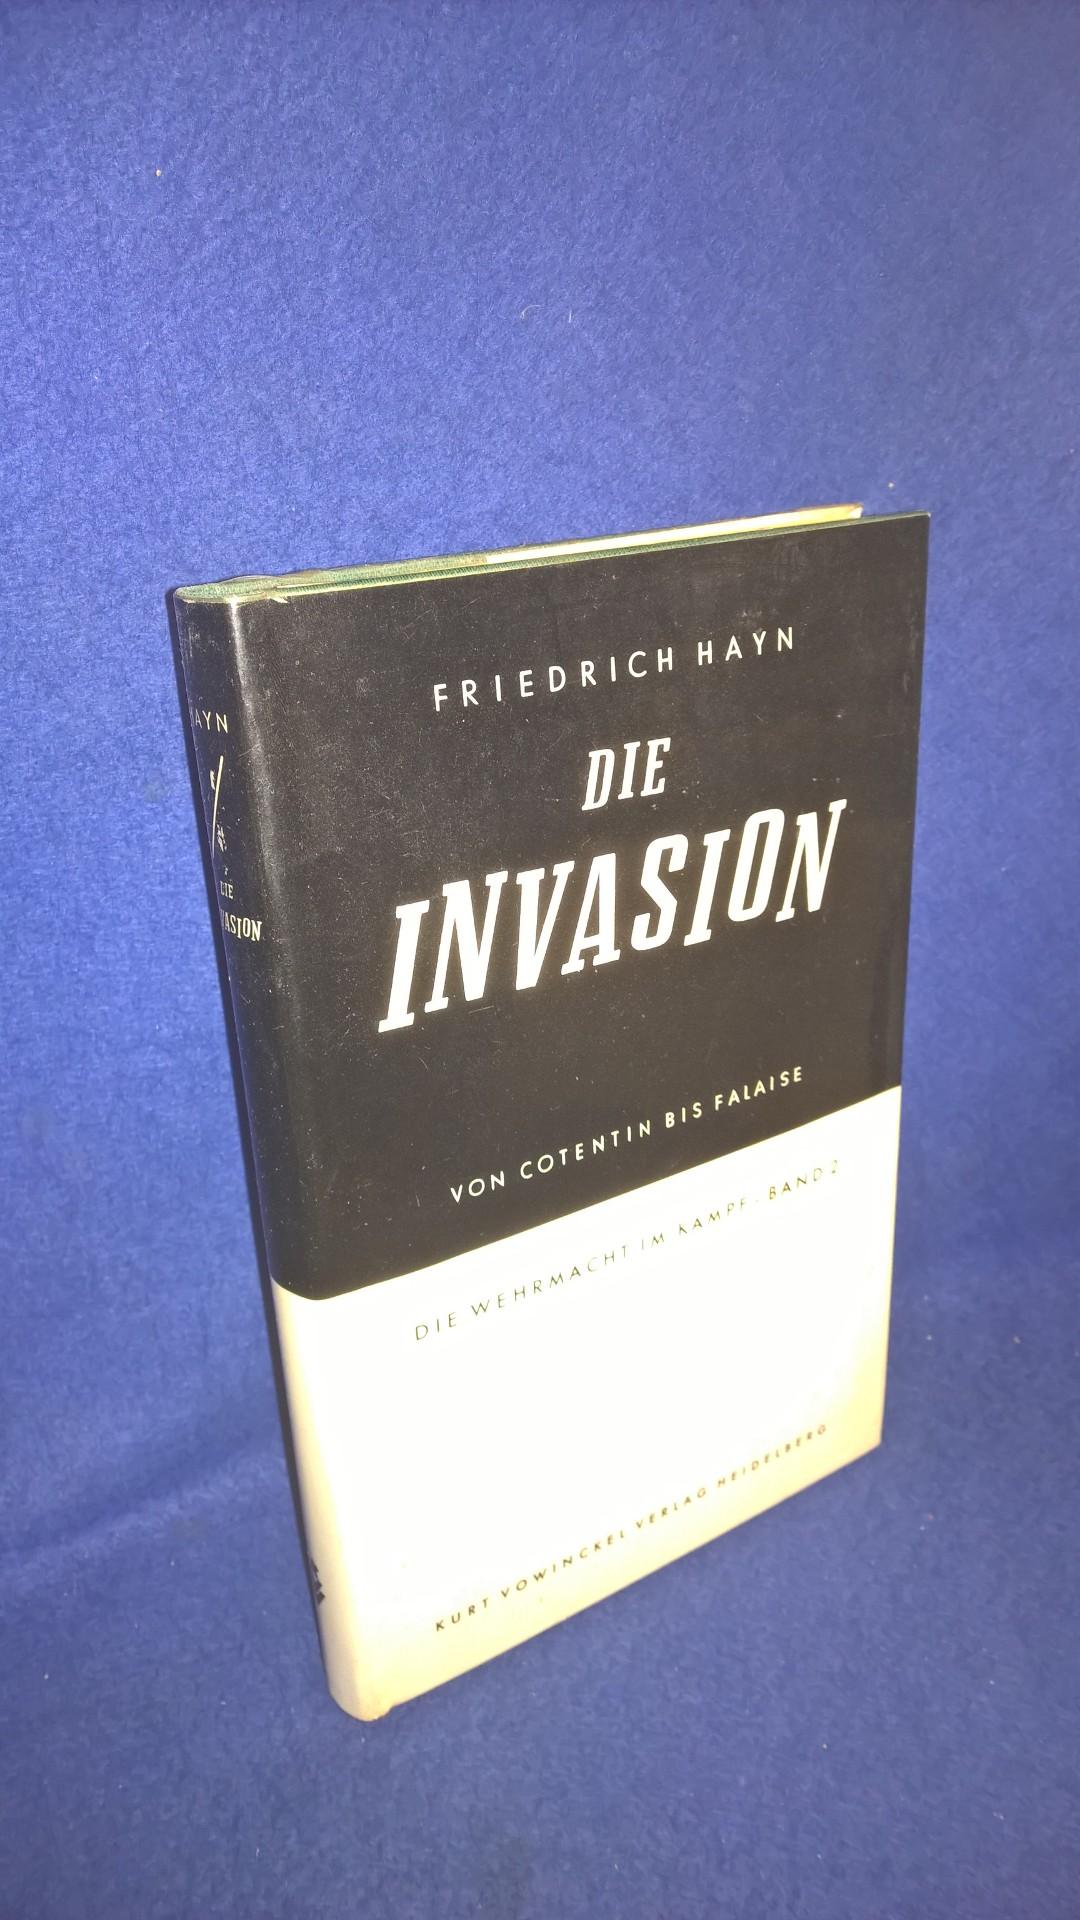 Die Wehrmacht im Kampf, Band 2 - Die Invasion: Von Cotentin bis Falaise. - 